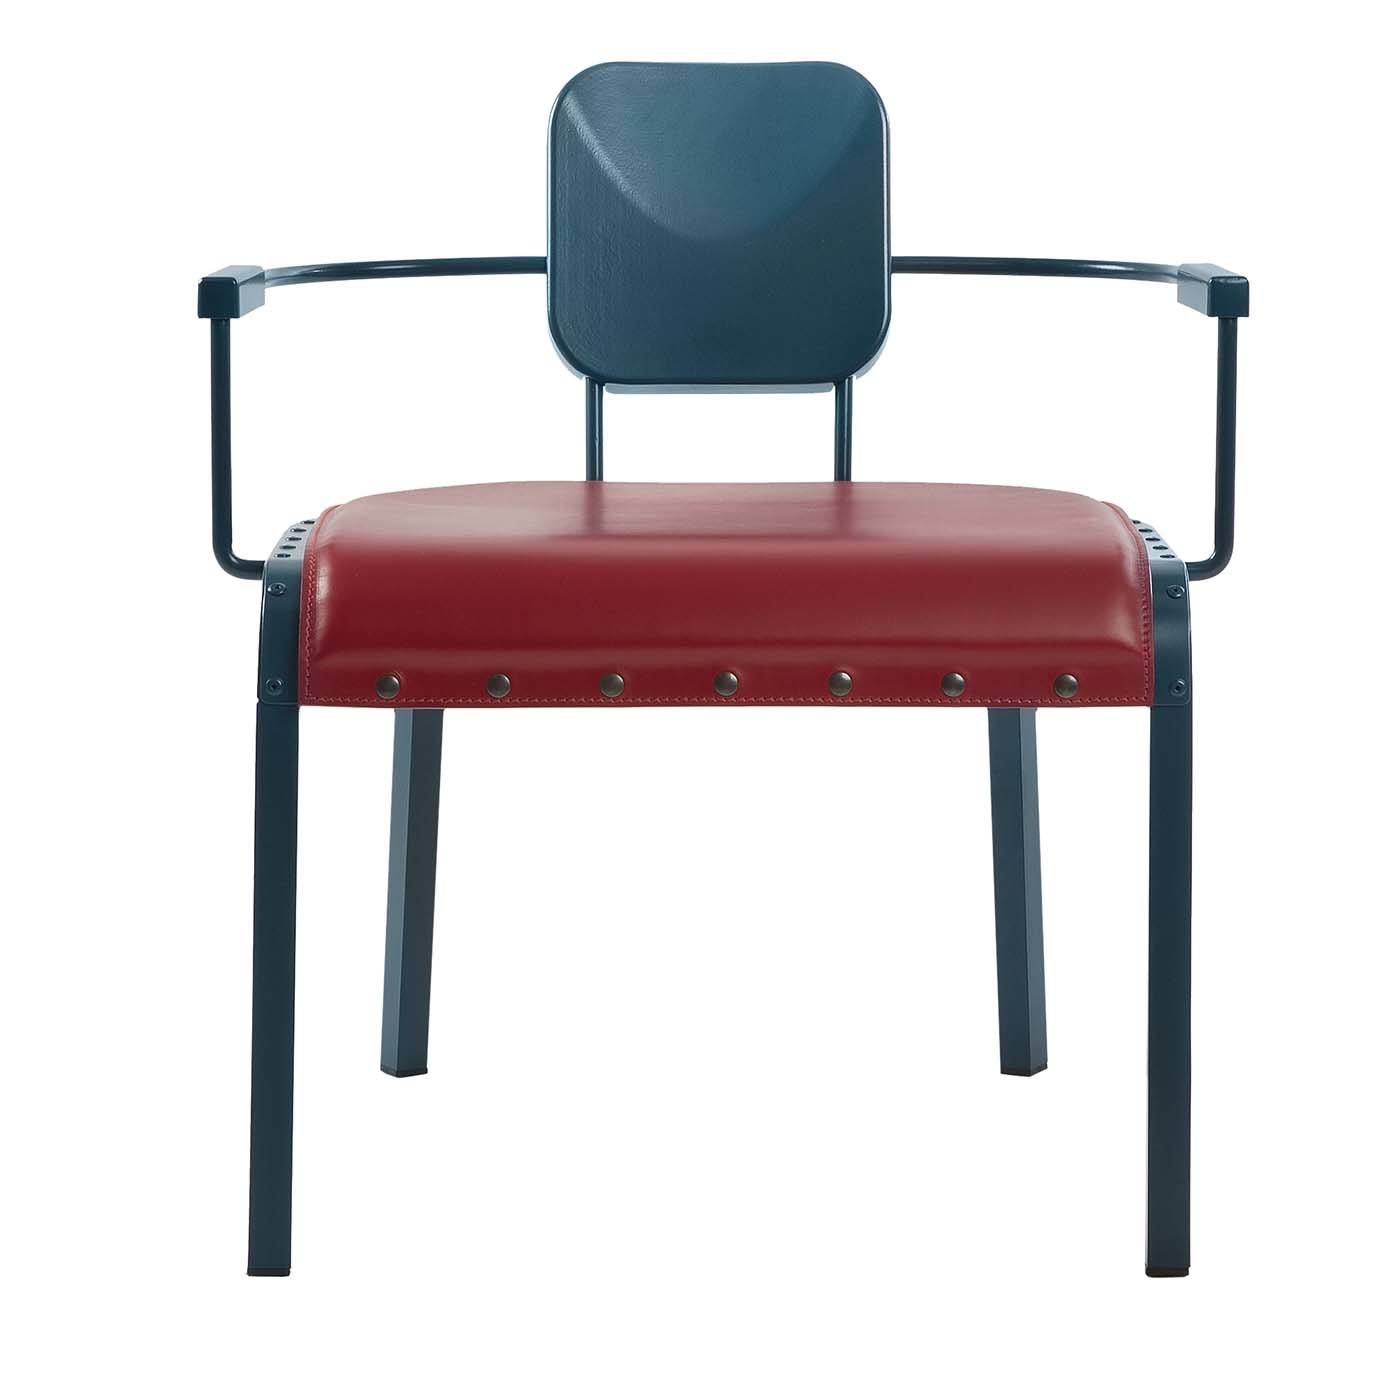 Sillón Lounge Rock4 azul con asiento de cuero rojo de Marc Sadler - Vista principal